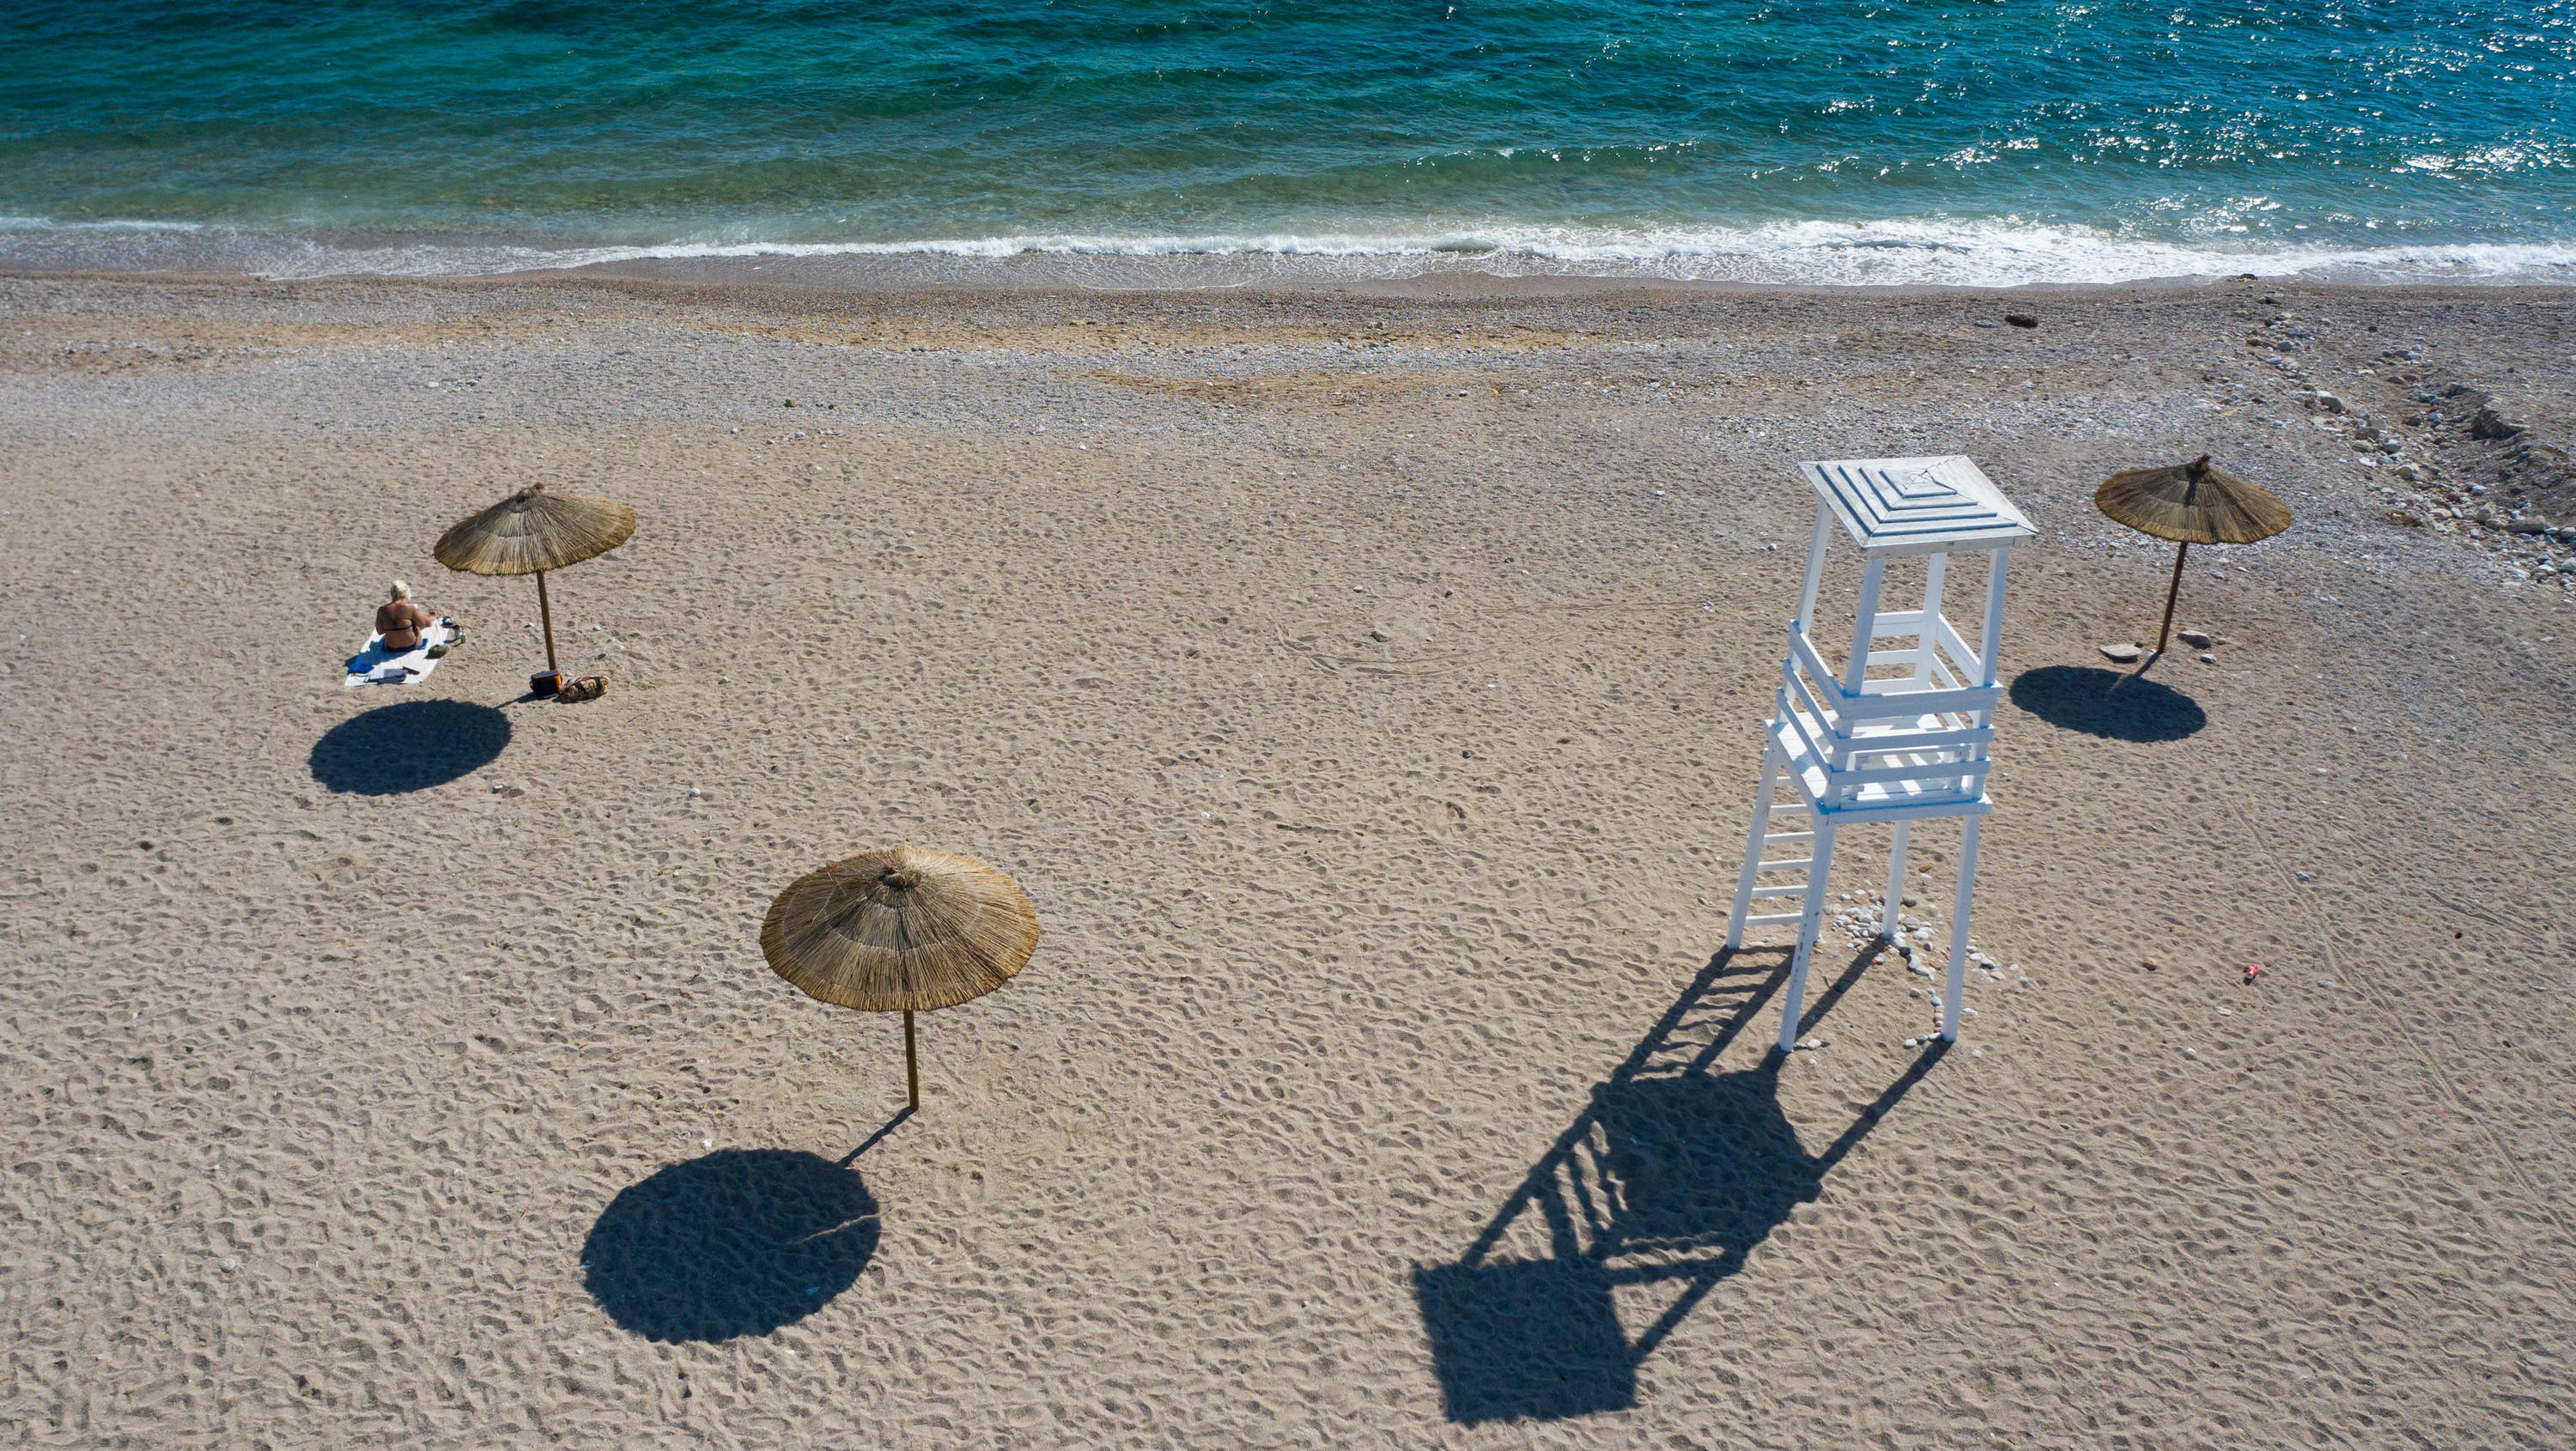 30.05.2020, Griechenland, Athen: Eine Frau sitzt an einem Strand mit Blauer Flagge südlich von Athen neben einem Sonnenschirm in der Sonne. Athen hat angekündigt, den Tourismus aus dem Ausland neu starten zu wollen. Heute soll der griechische Pandemi